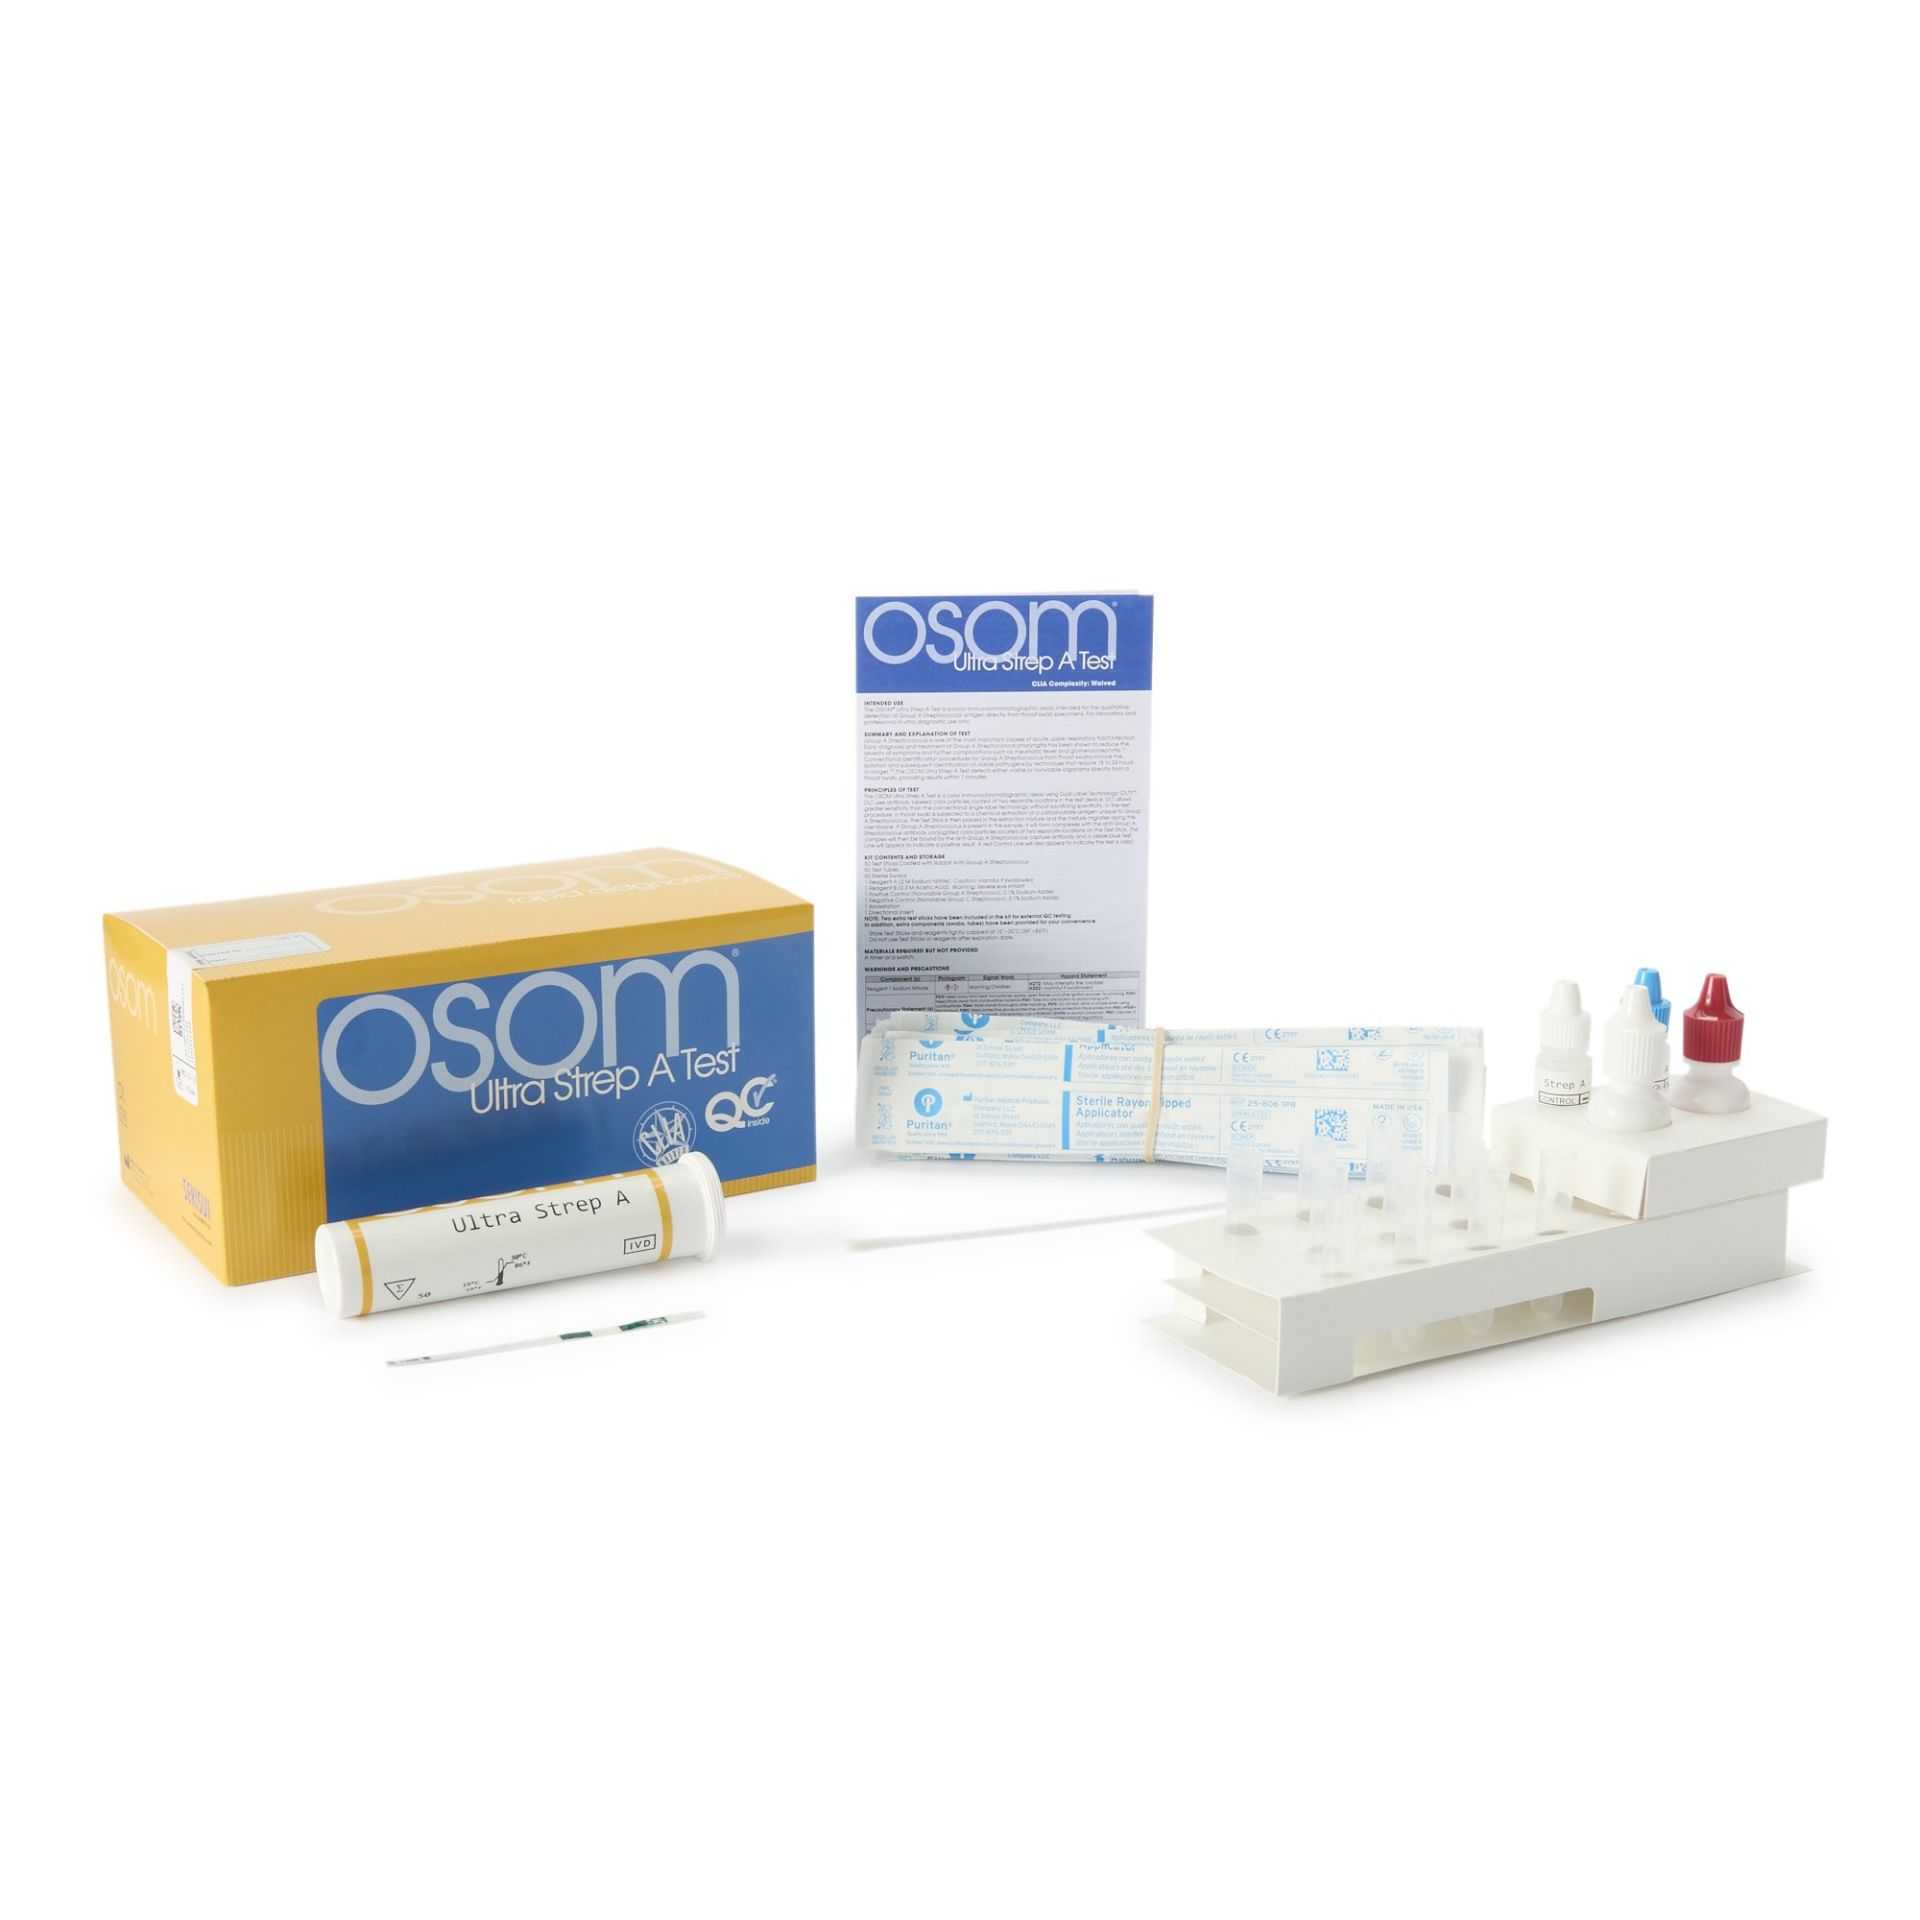 OSOM® Ultra Strep A Test - 900/Case